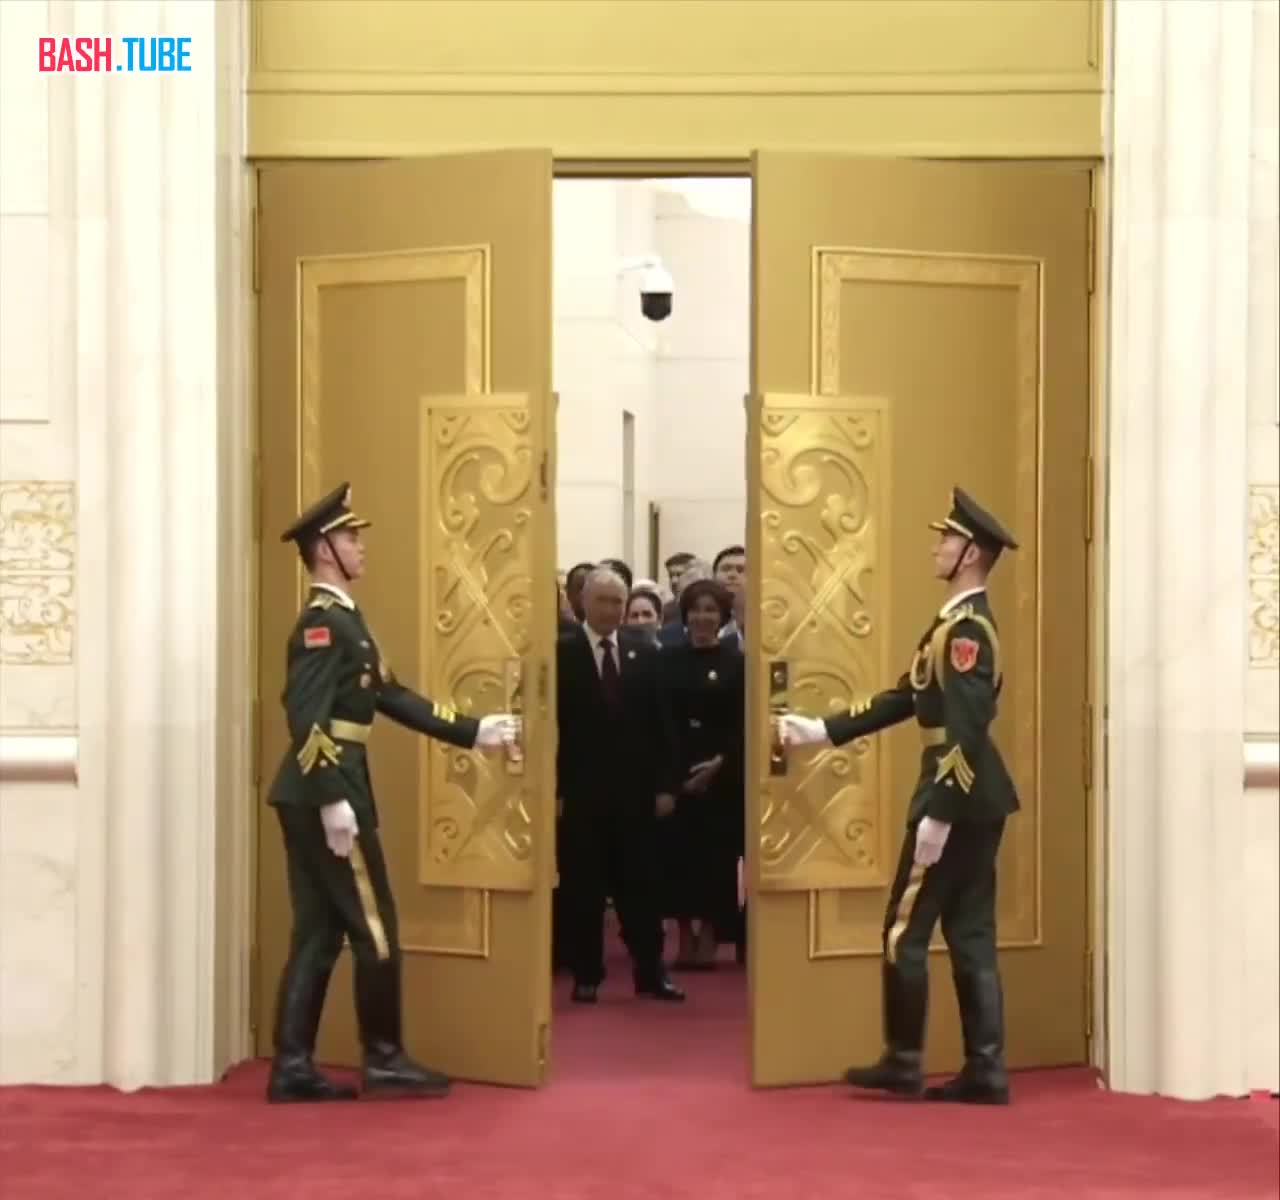  Путин первым из приглашенных заходит на приветственный банкет Си Цзиньпина